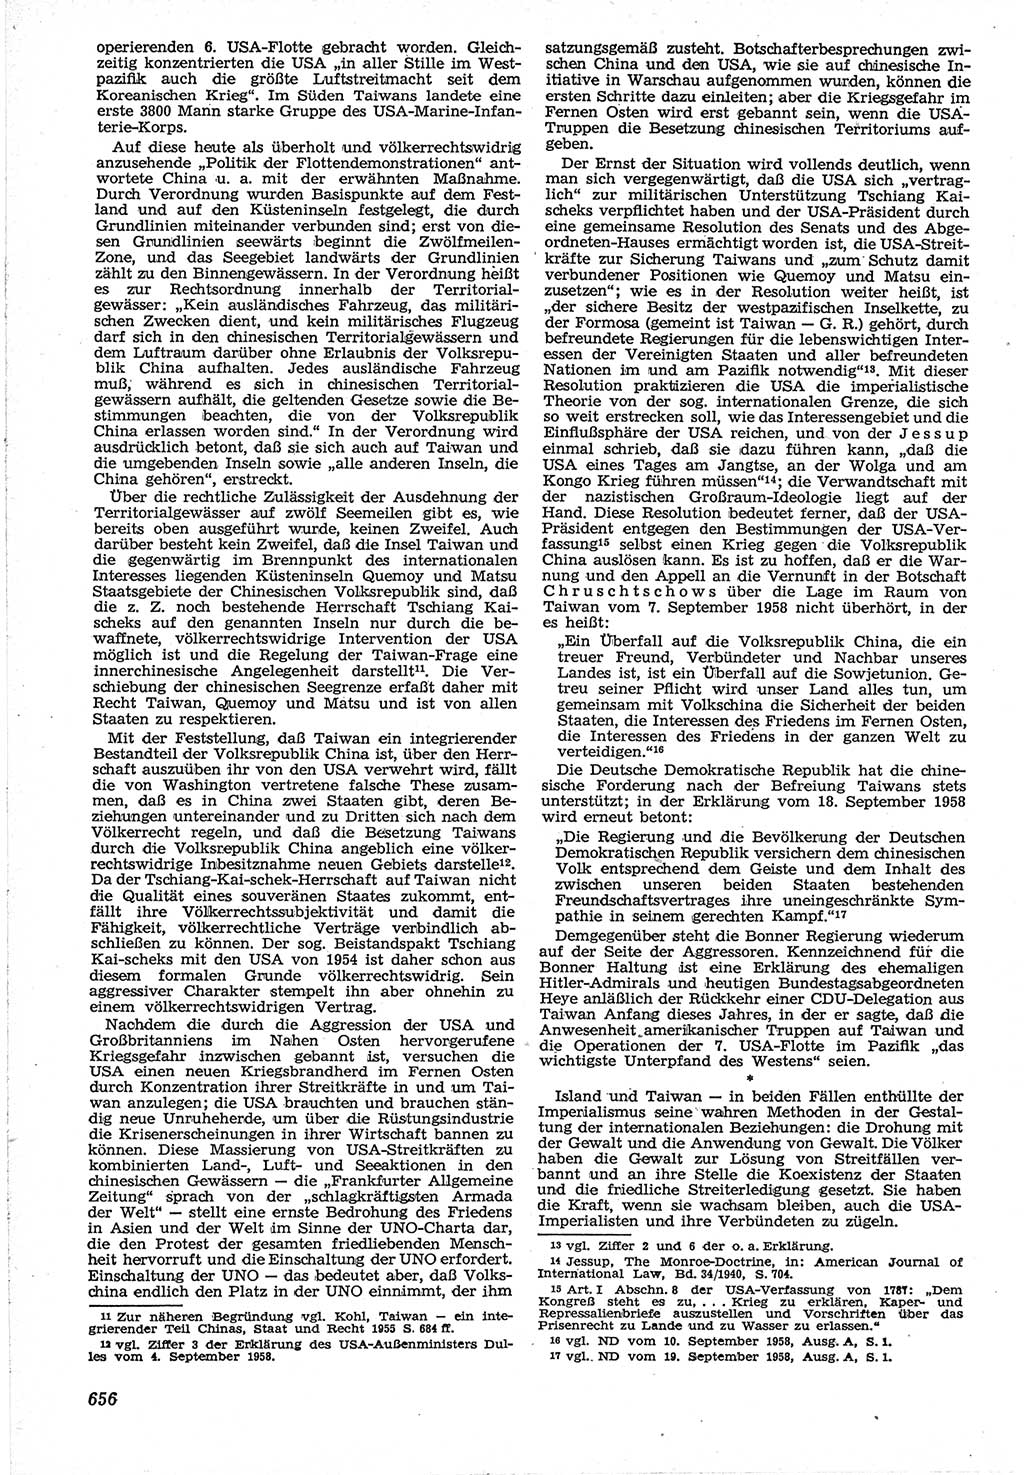 Neue Justiz (NJ), Zeitschrift für Recht und Rechtswissenschaft [Deutsche Demokratische Republik (DDR)], 12. Jahrgang 1958, Seite 656 (NJ DDR 1958, S. 656)